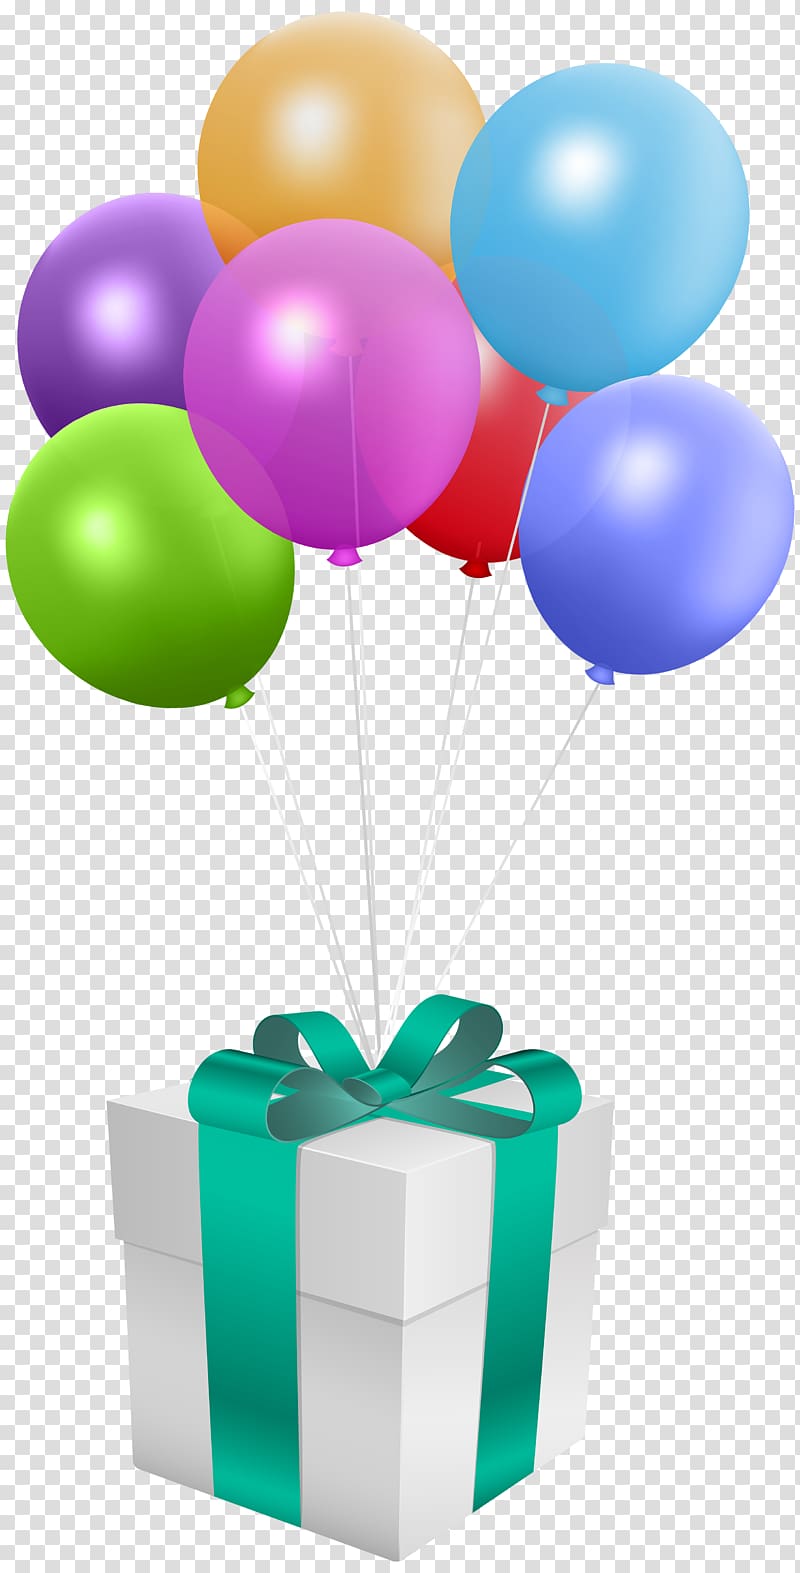 Balloon gift box, Balloon Gift Birthday